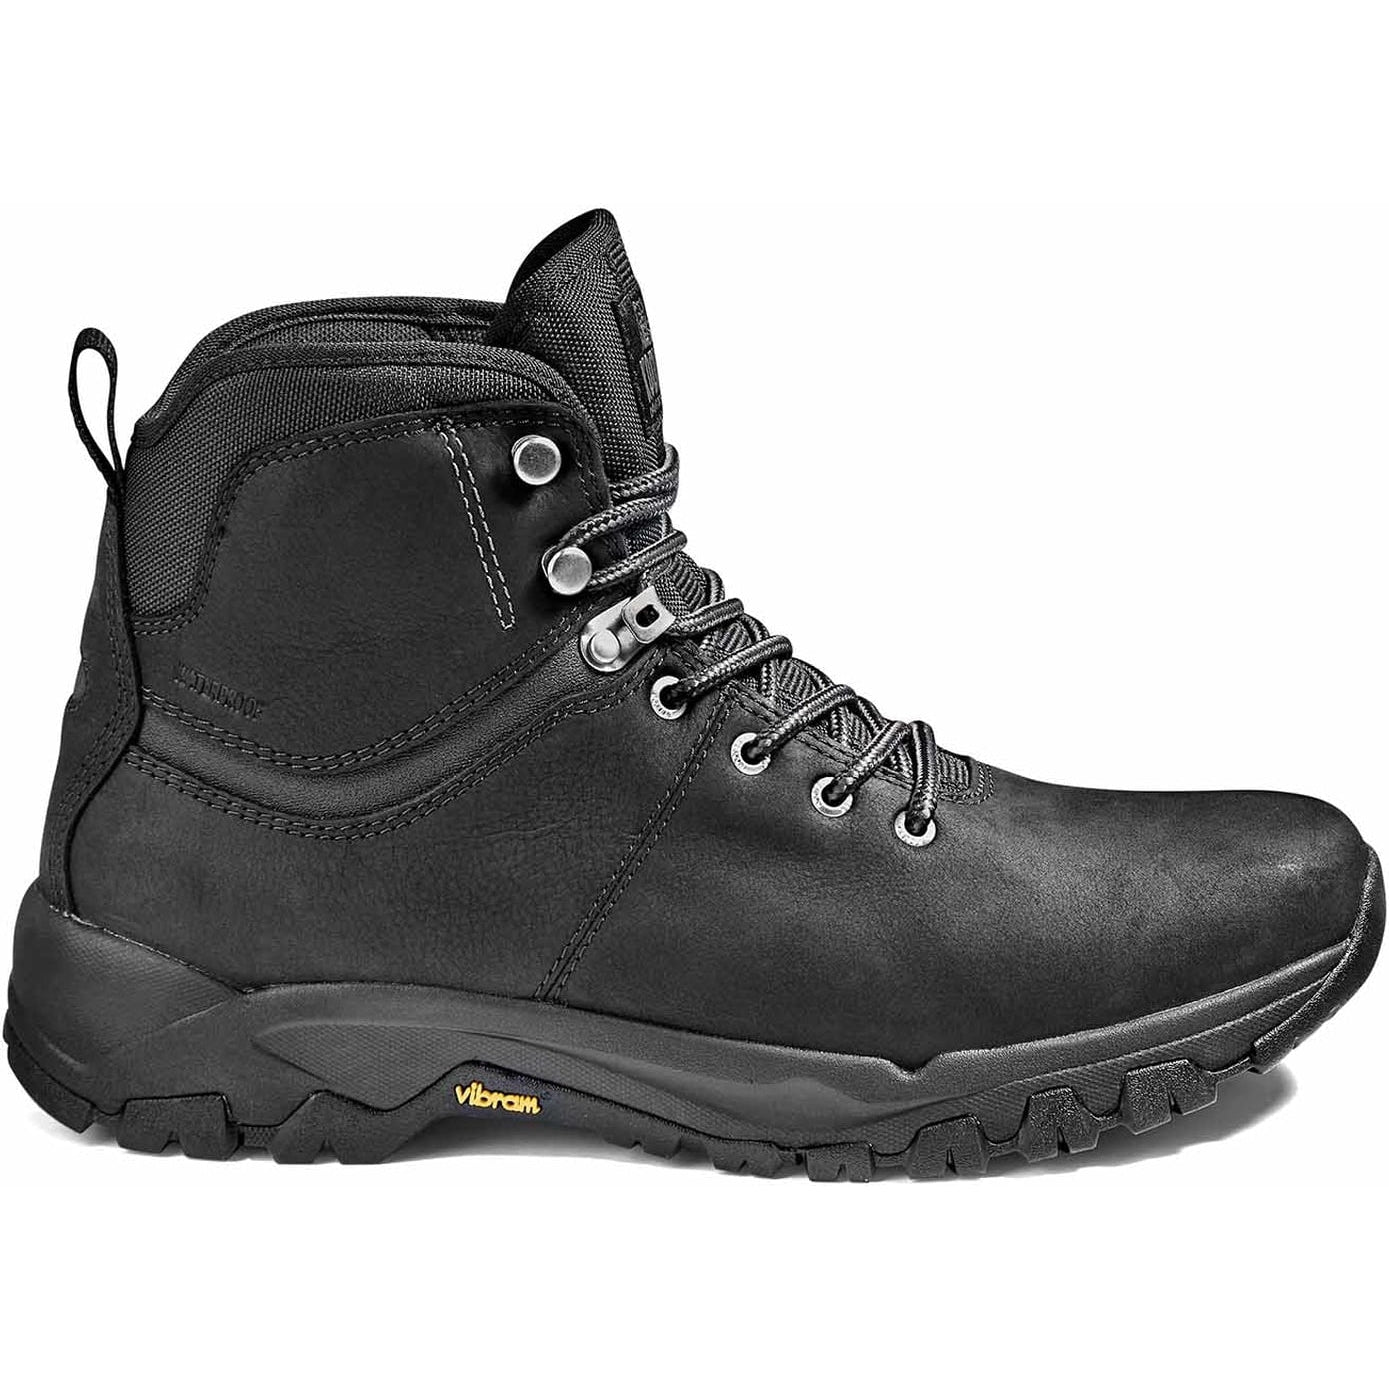 Kodiak Men's Comox Soft Toe Waterproof Lace Up Outdoor Boot -Black- 4TE2BK  - Overlook Boots